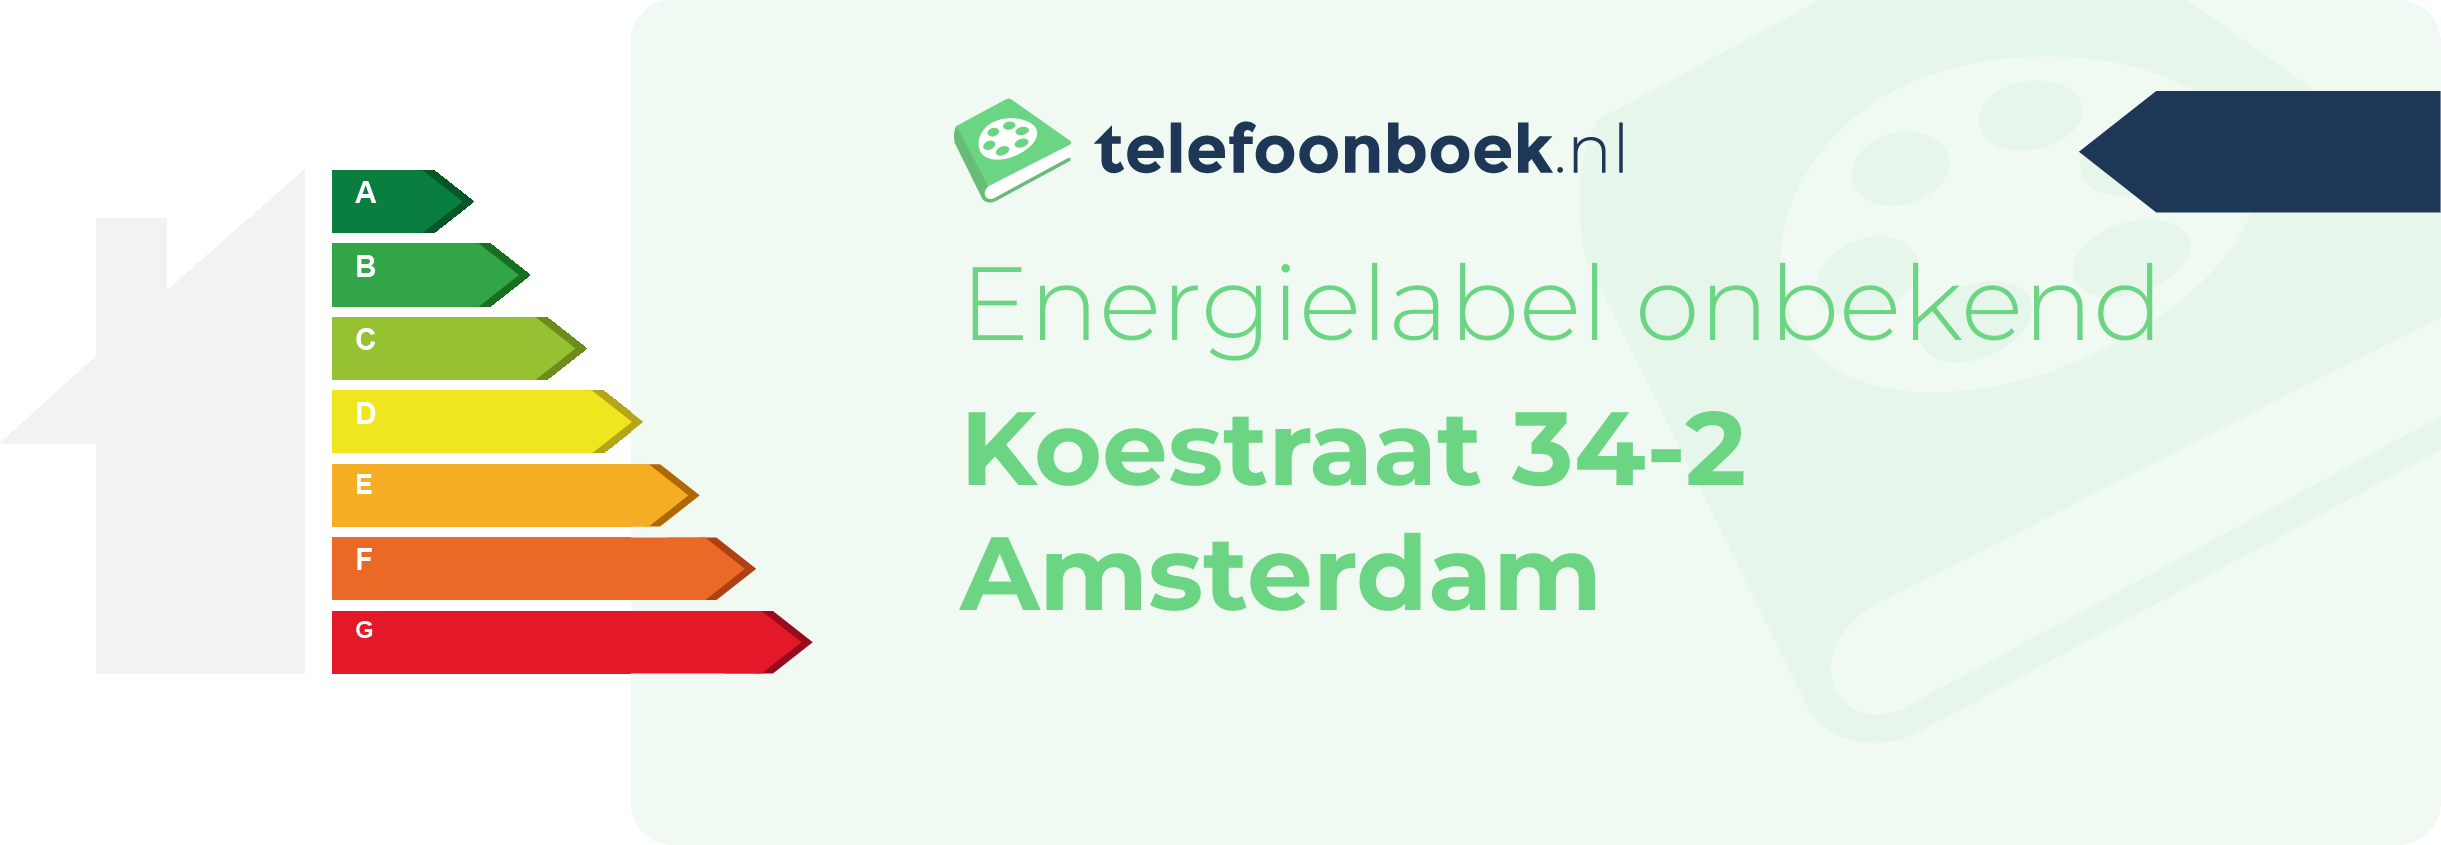 Energielabel Koestraat 34-2 Amsterdam